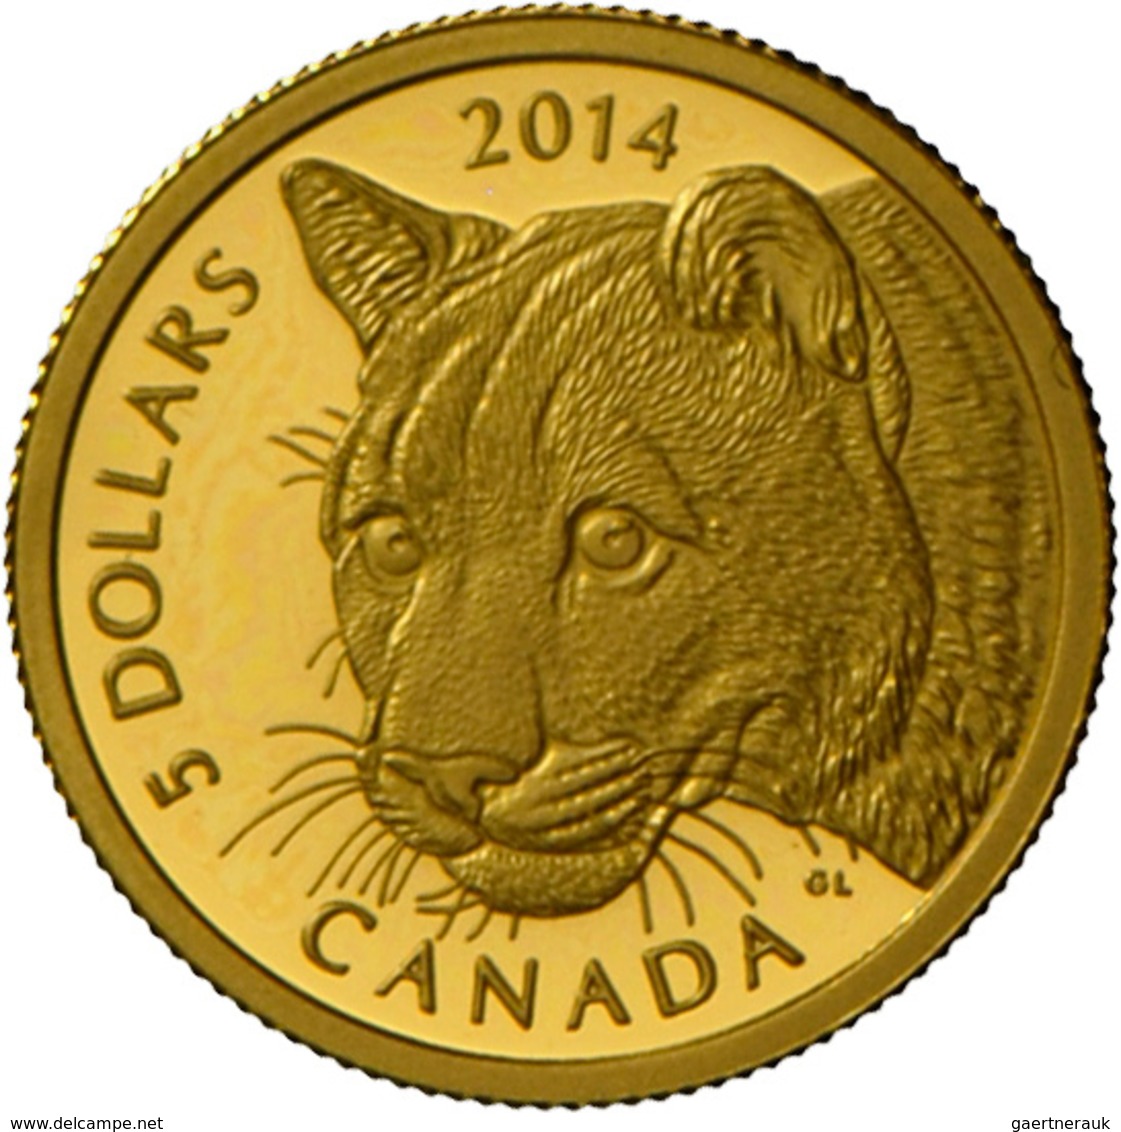 Kanada - Anlagegold: Elizabeth II 1952 -,: 5 Dollars 2014, Cougar (Puma), KM# 1756, 1/10 OZ (3,14 G) - Canada